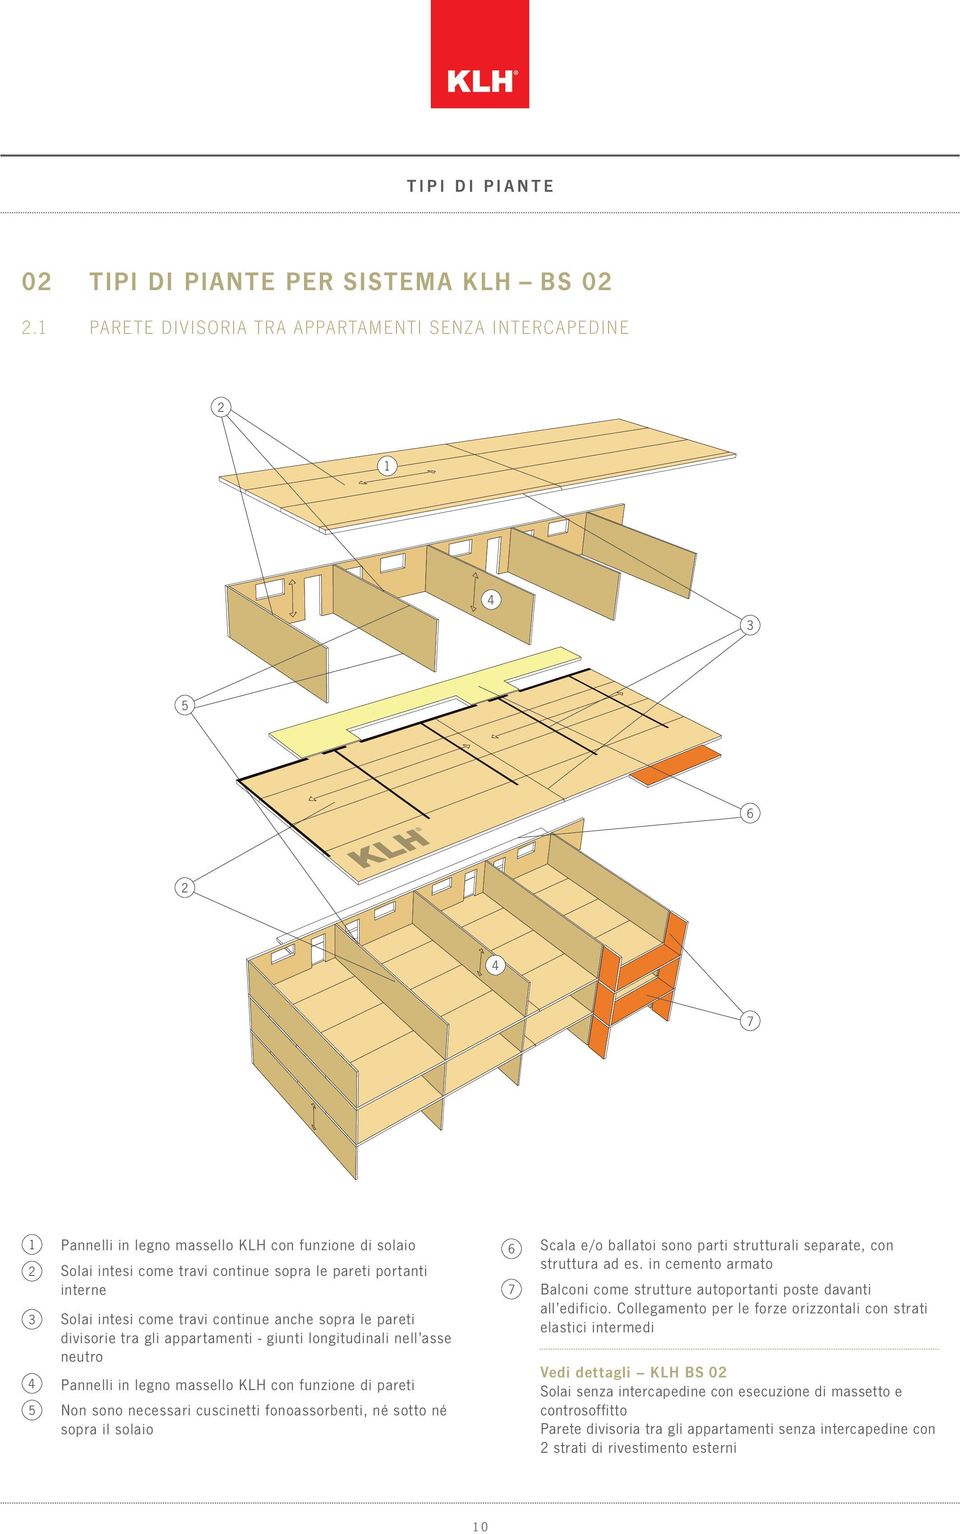 continue anche sopra le pareti divisorie tra gli appartamenti - giunti longitudinali nell asse neutro Pannelli in legno massello KLH con funzione di pareti Non sono necessari cuscinetti